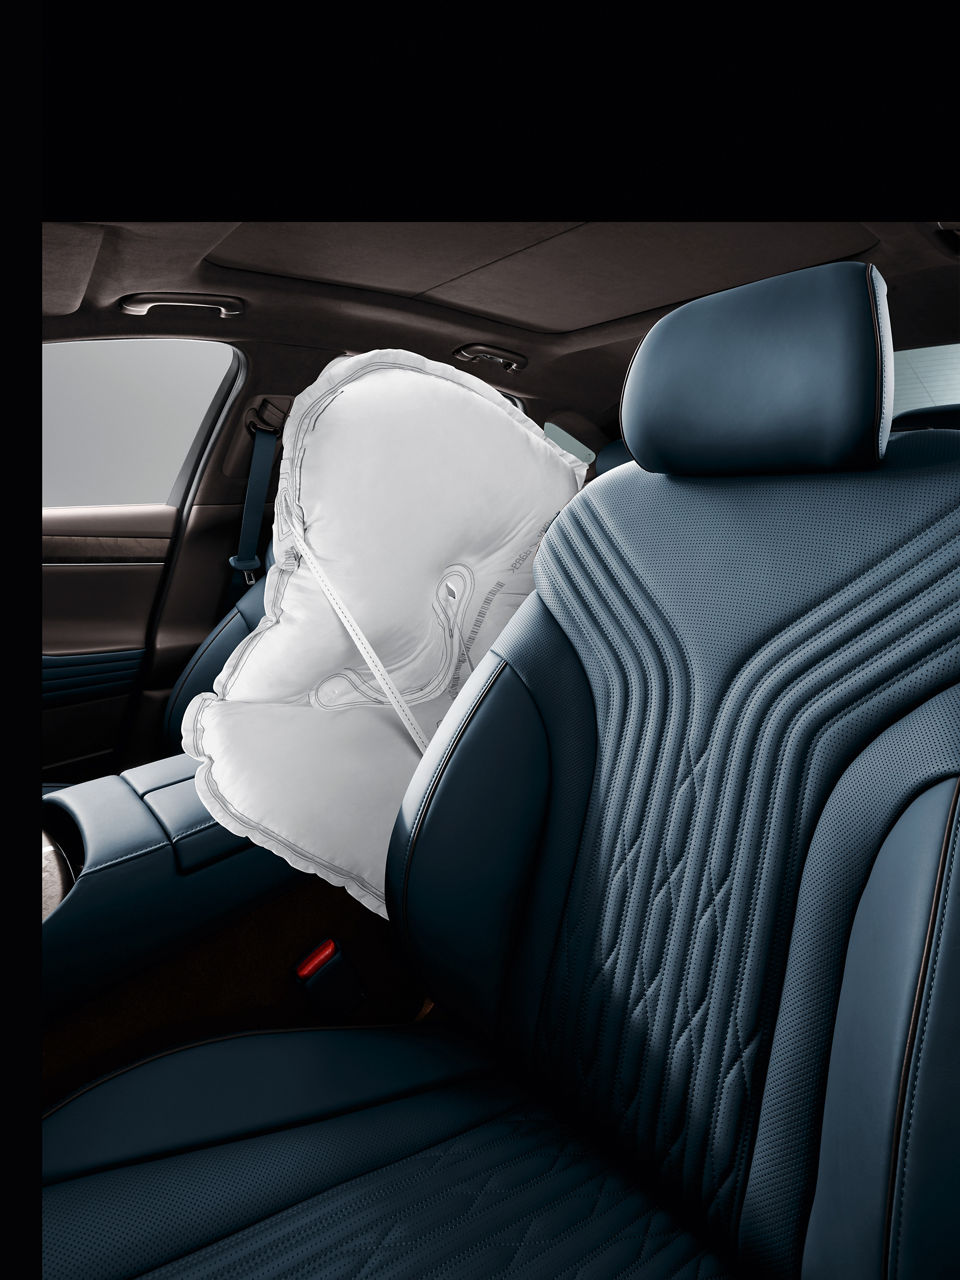 Siège conducteur bleu d'une voiture avec airbag latéral activé